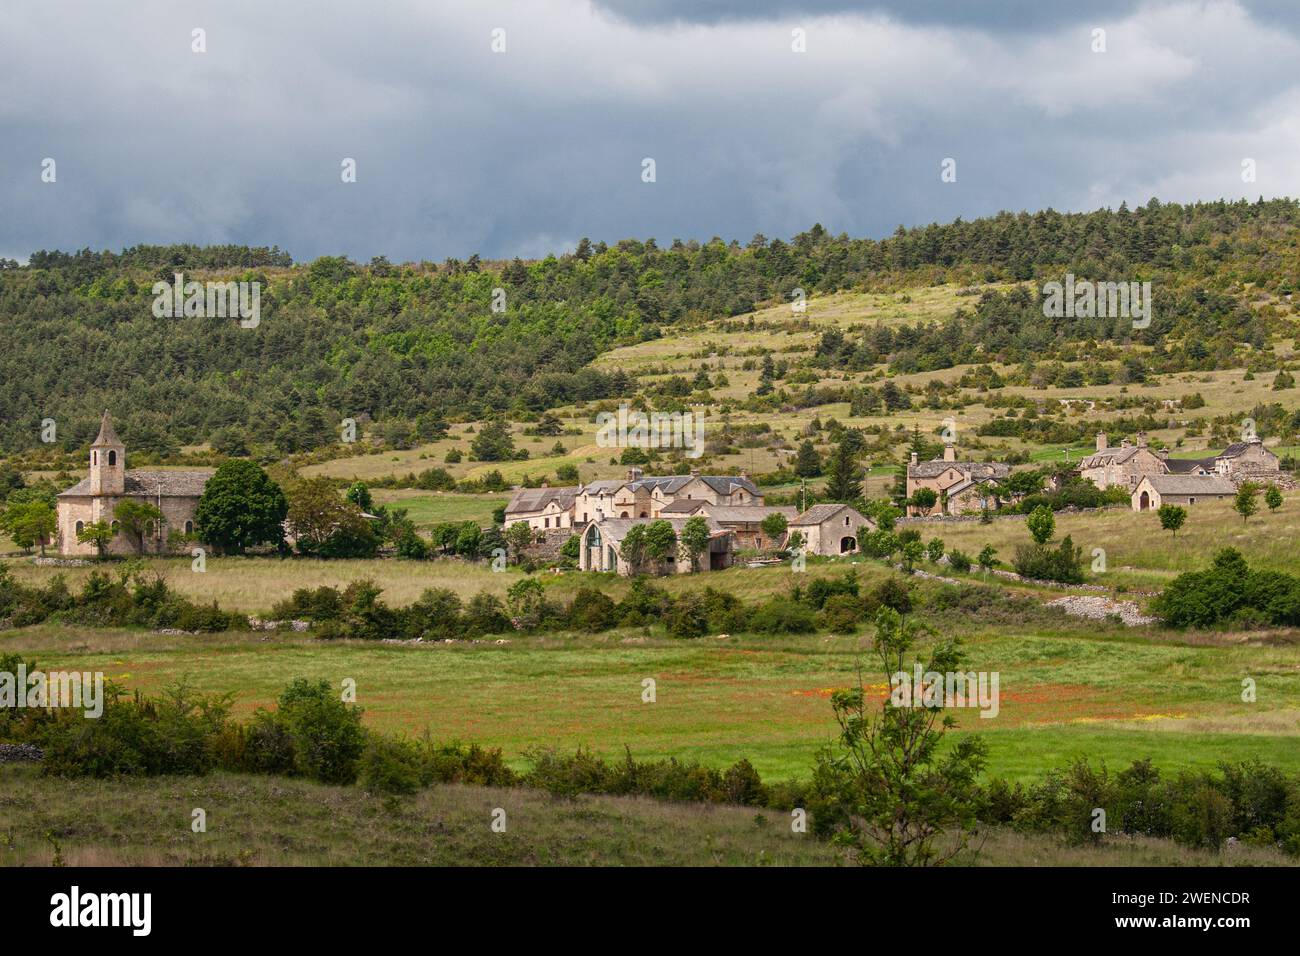 A village on Causse Méjean, Lozère department, Occitanie region, France Stock Photo